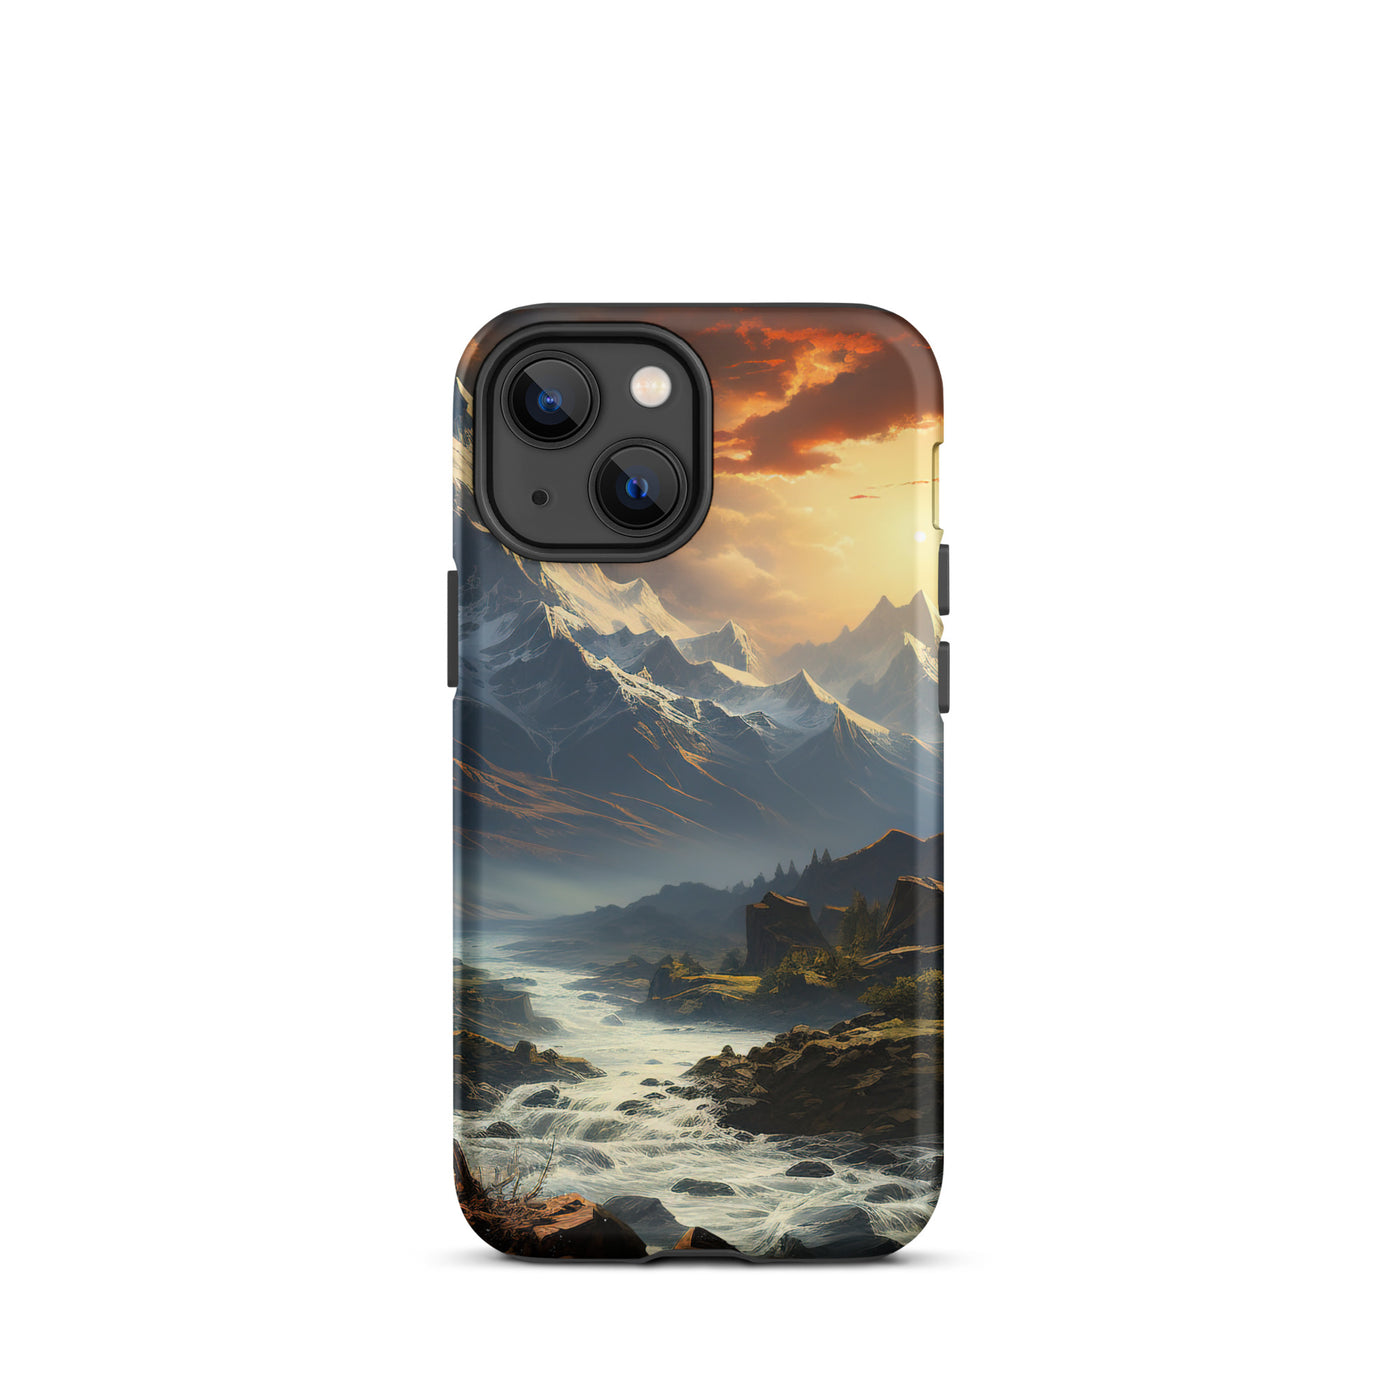 Berge, Sonne, steiniger Bach und Wolken - Epische Stimmung - iPhone Schutzhülle (robust) berge xxx iPhone 13 mini